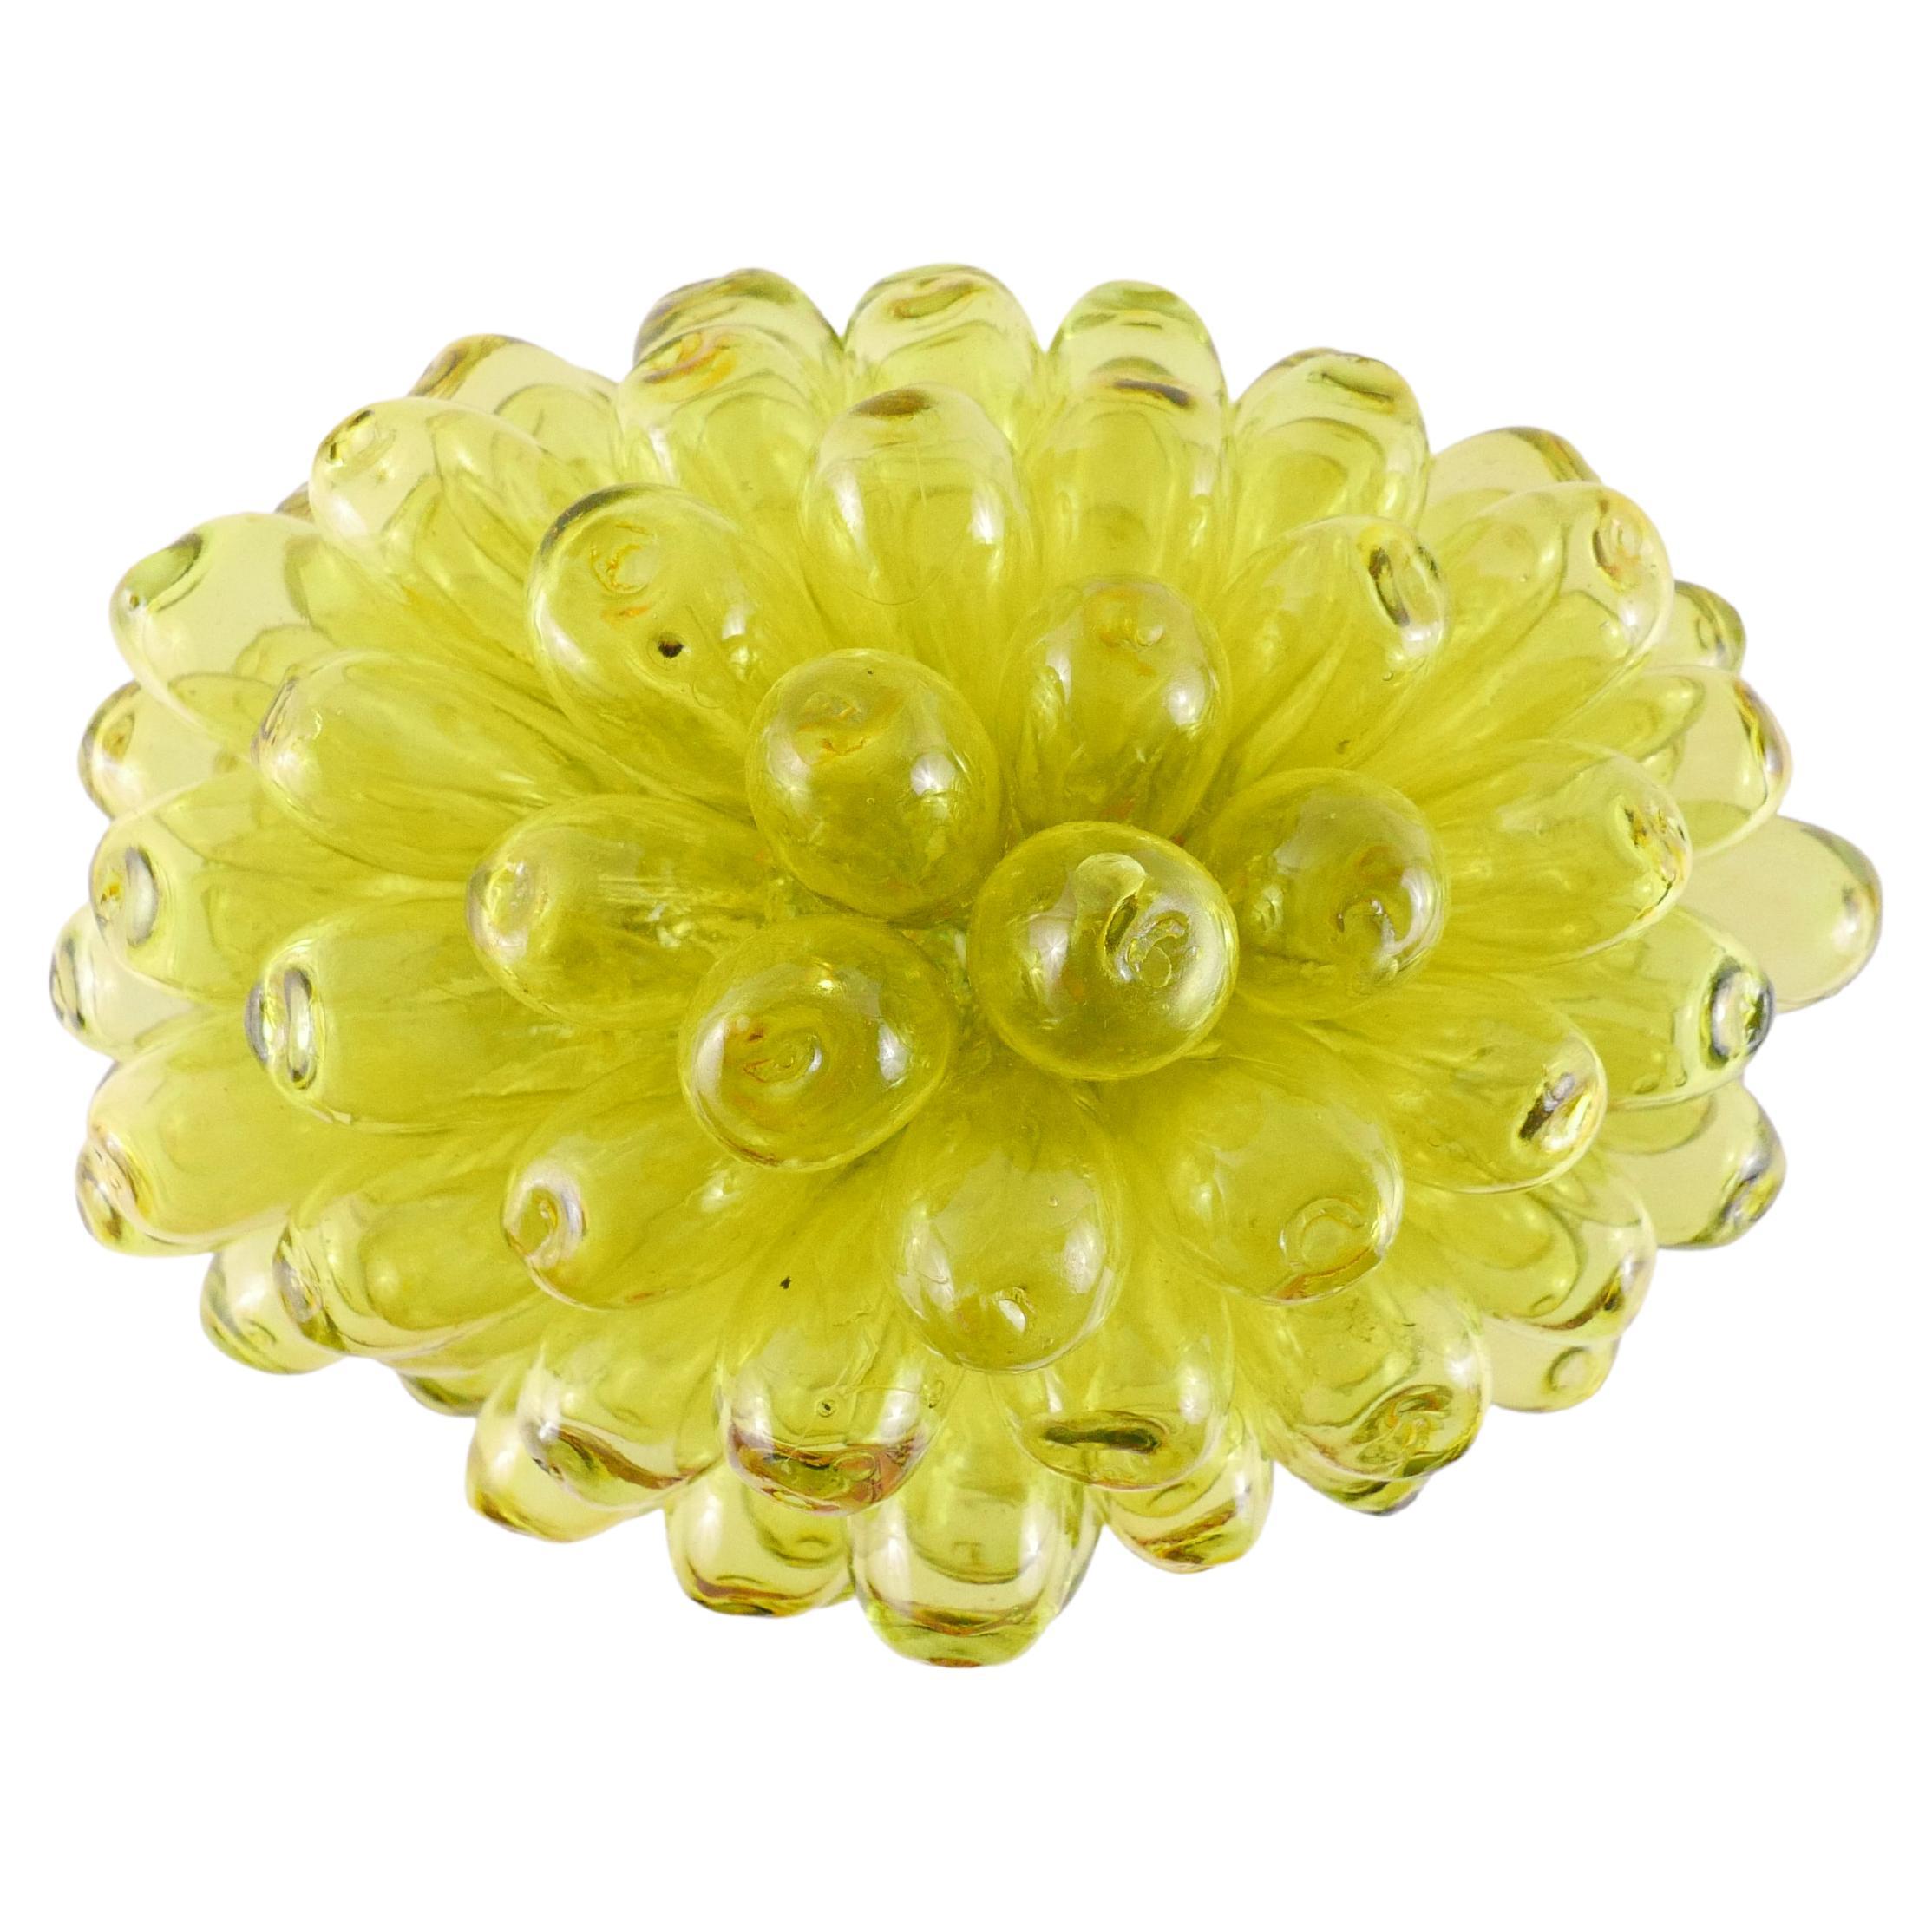 Tablelamp or floorlamp from mouthblown glass - lemon